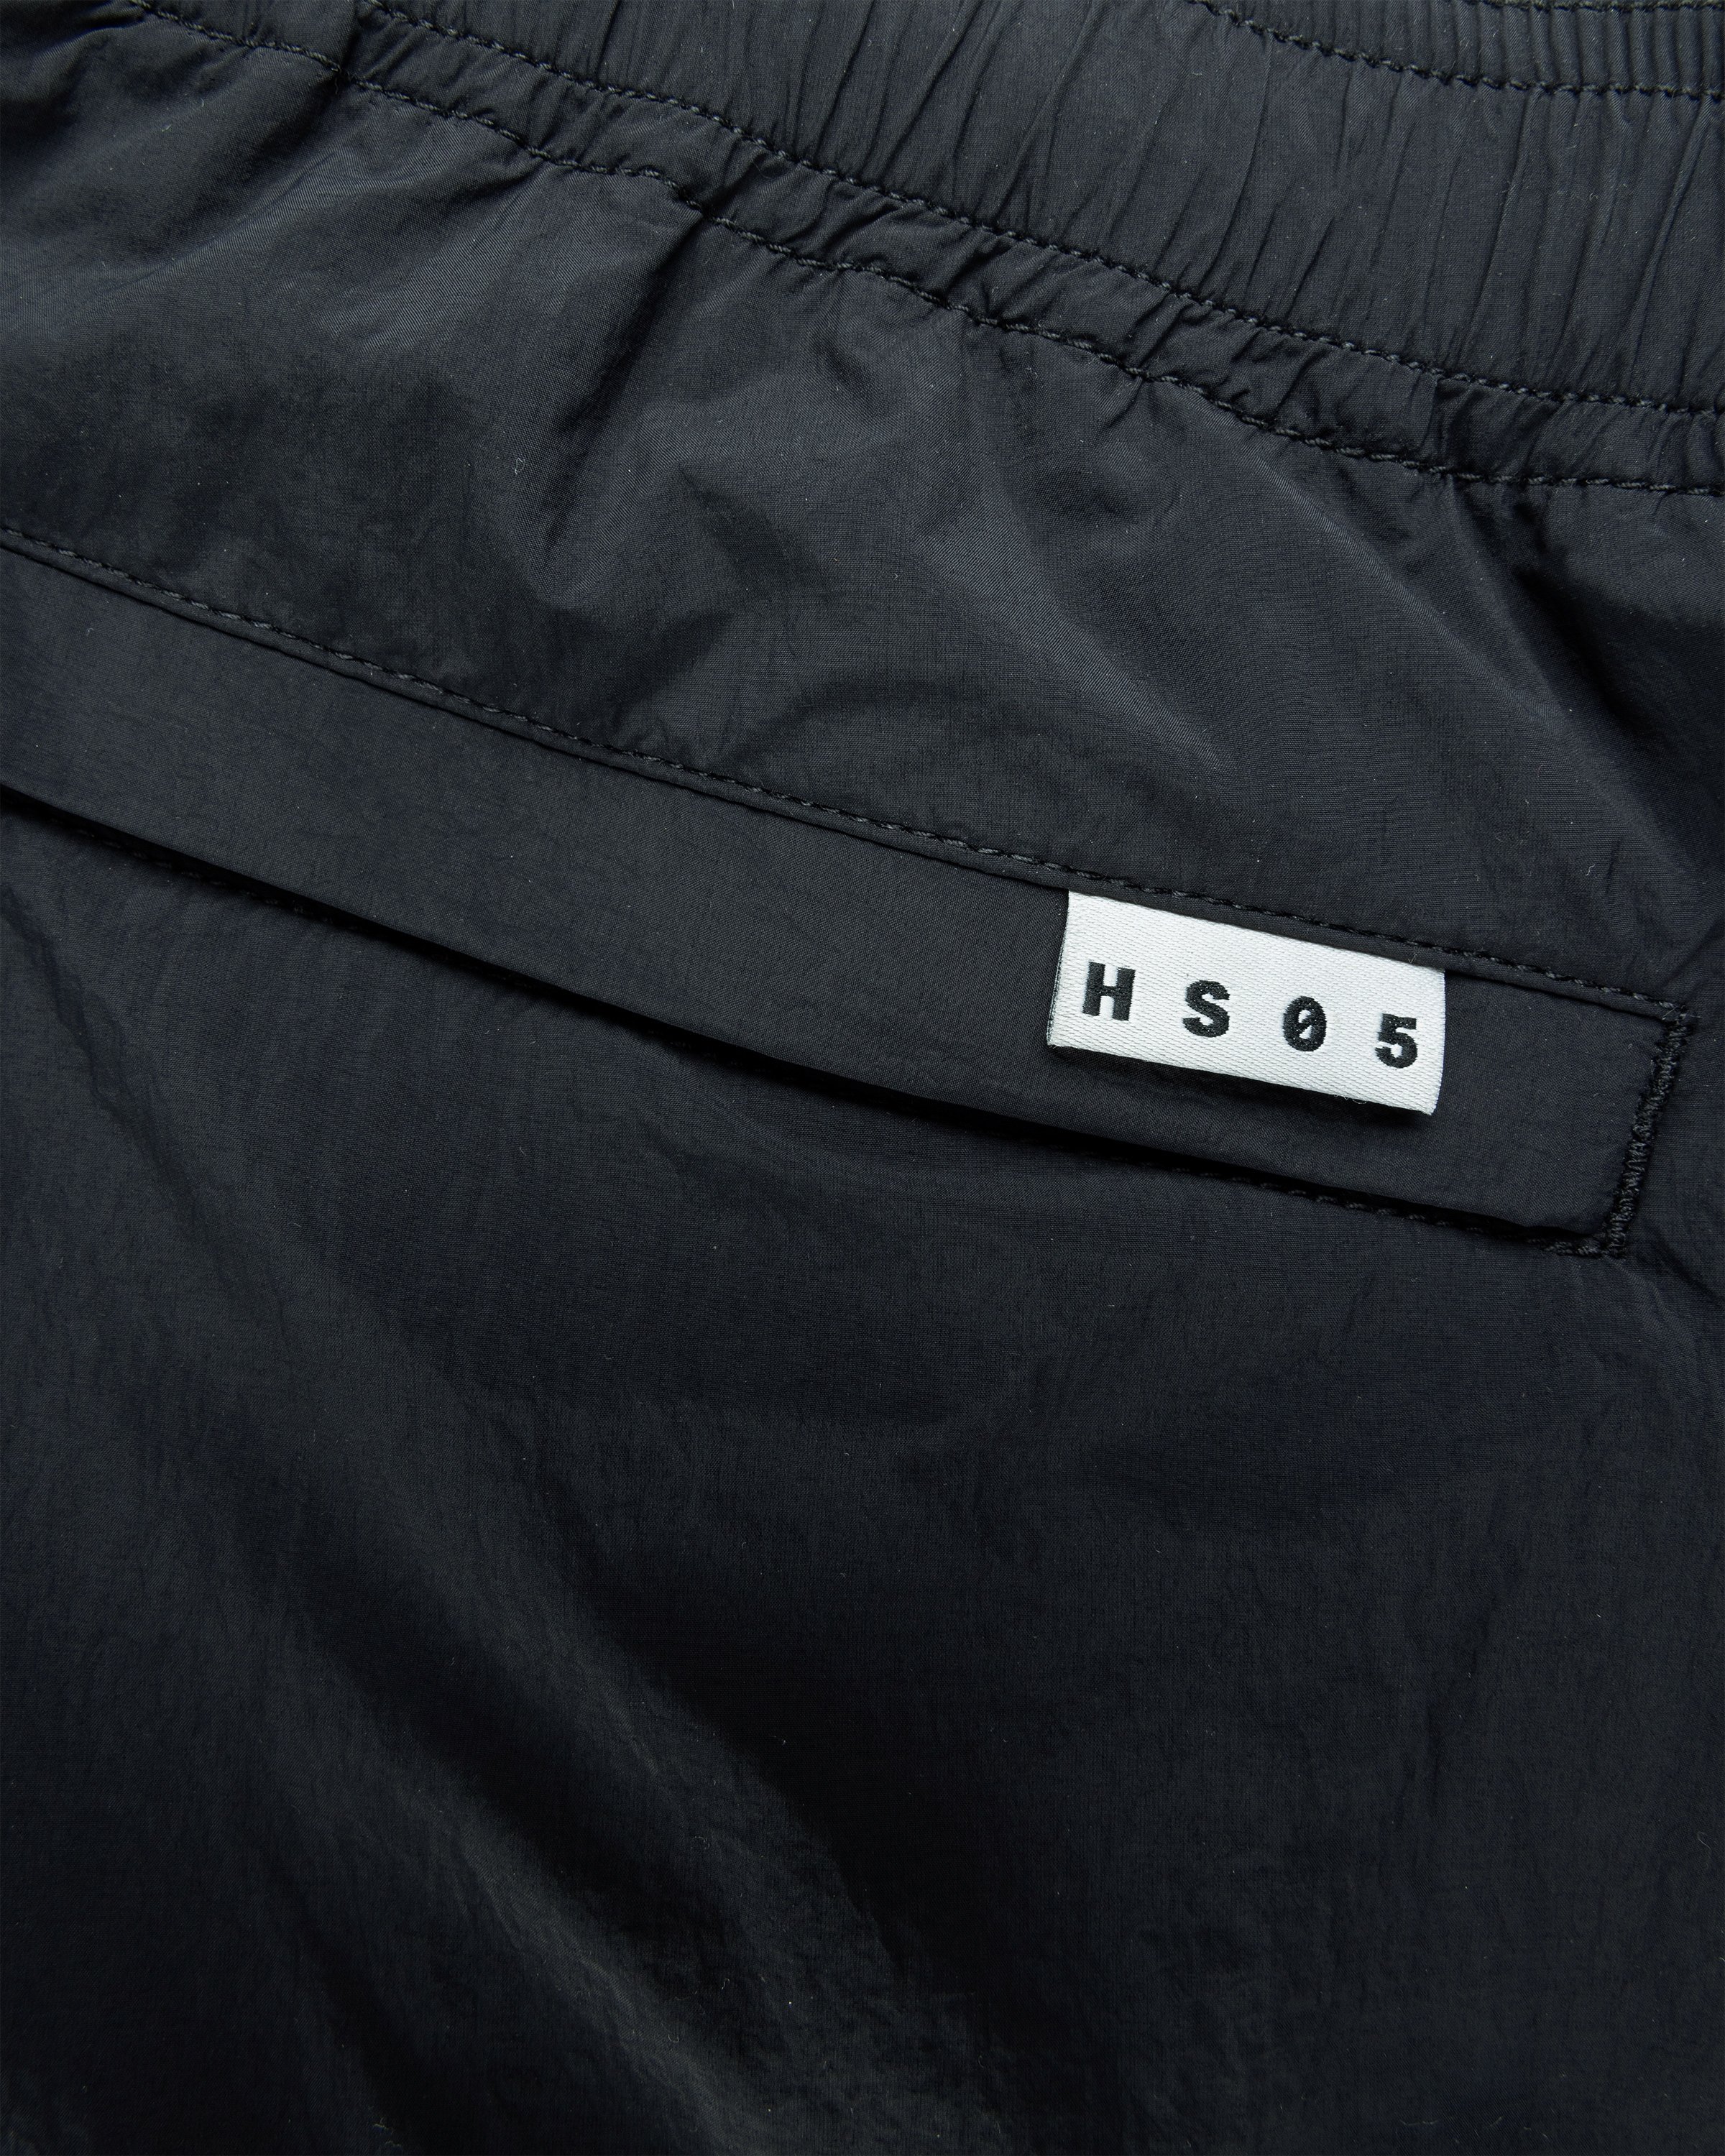 Highsnobiety HS05 - Natural Dyed Nylon Shorts Black - Clothing - Black - Image 8